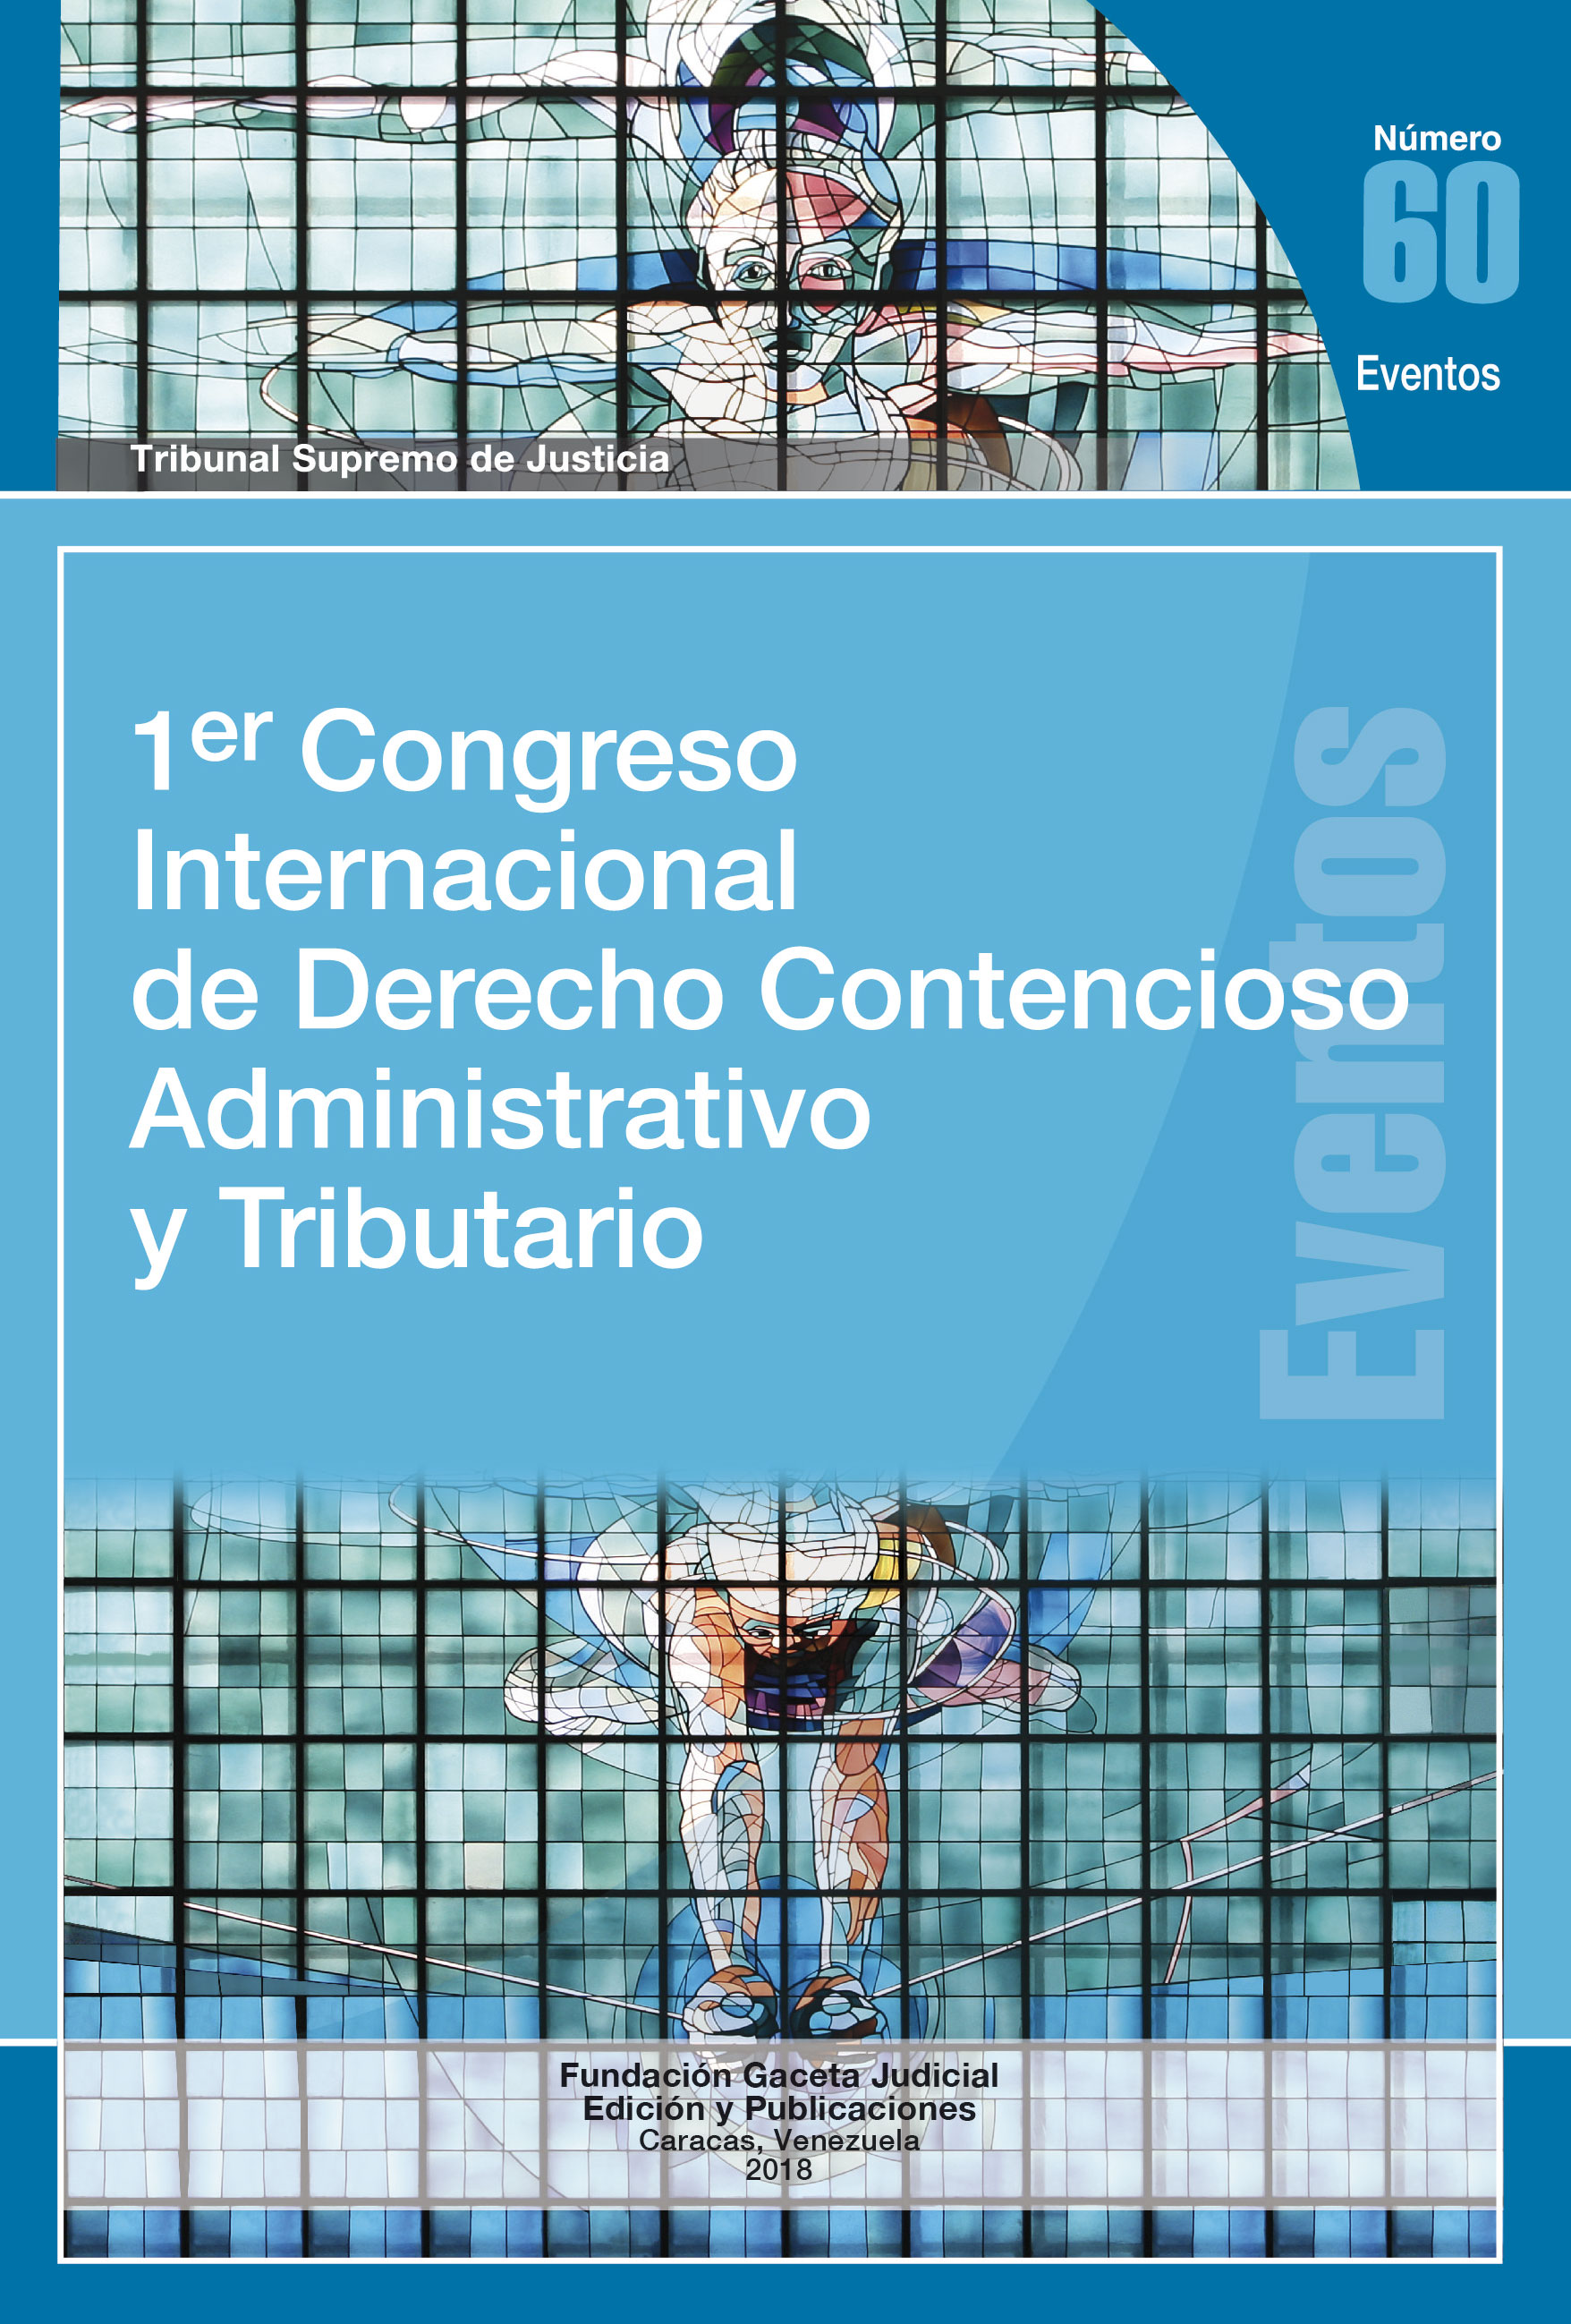 1er. Congreso Internacional de Derecho Administrativo y Tributario